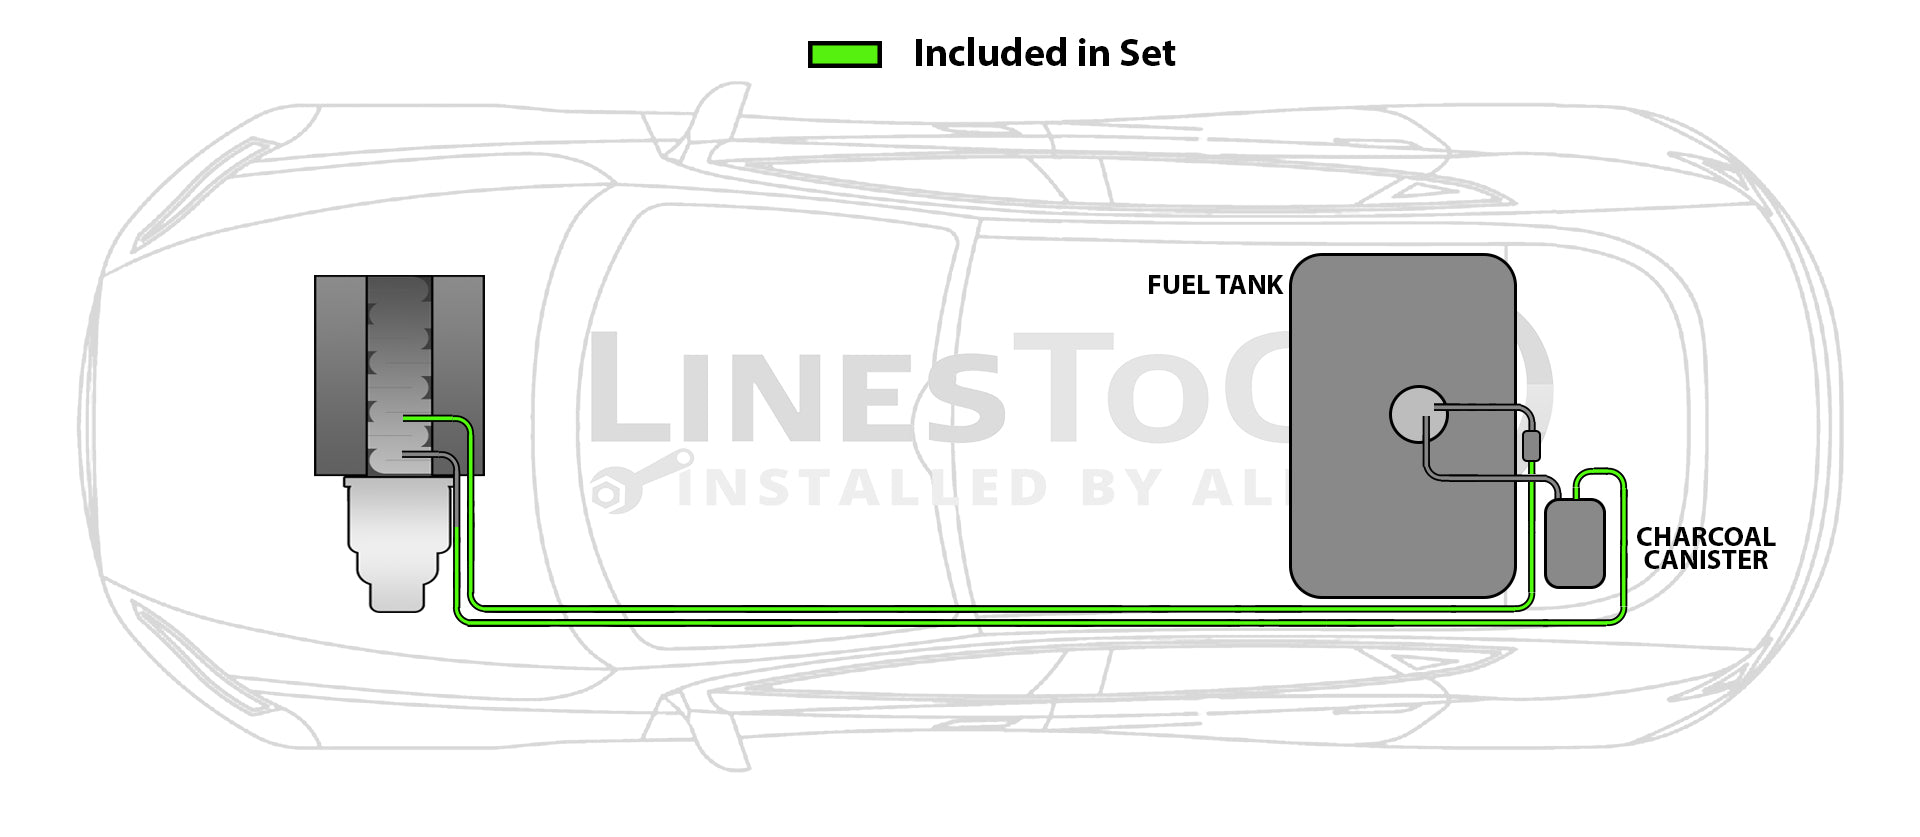 Pontiac G5 Fuel Line Set 2007 2.4L FL255-A3I